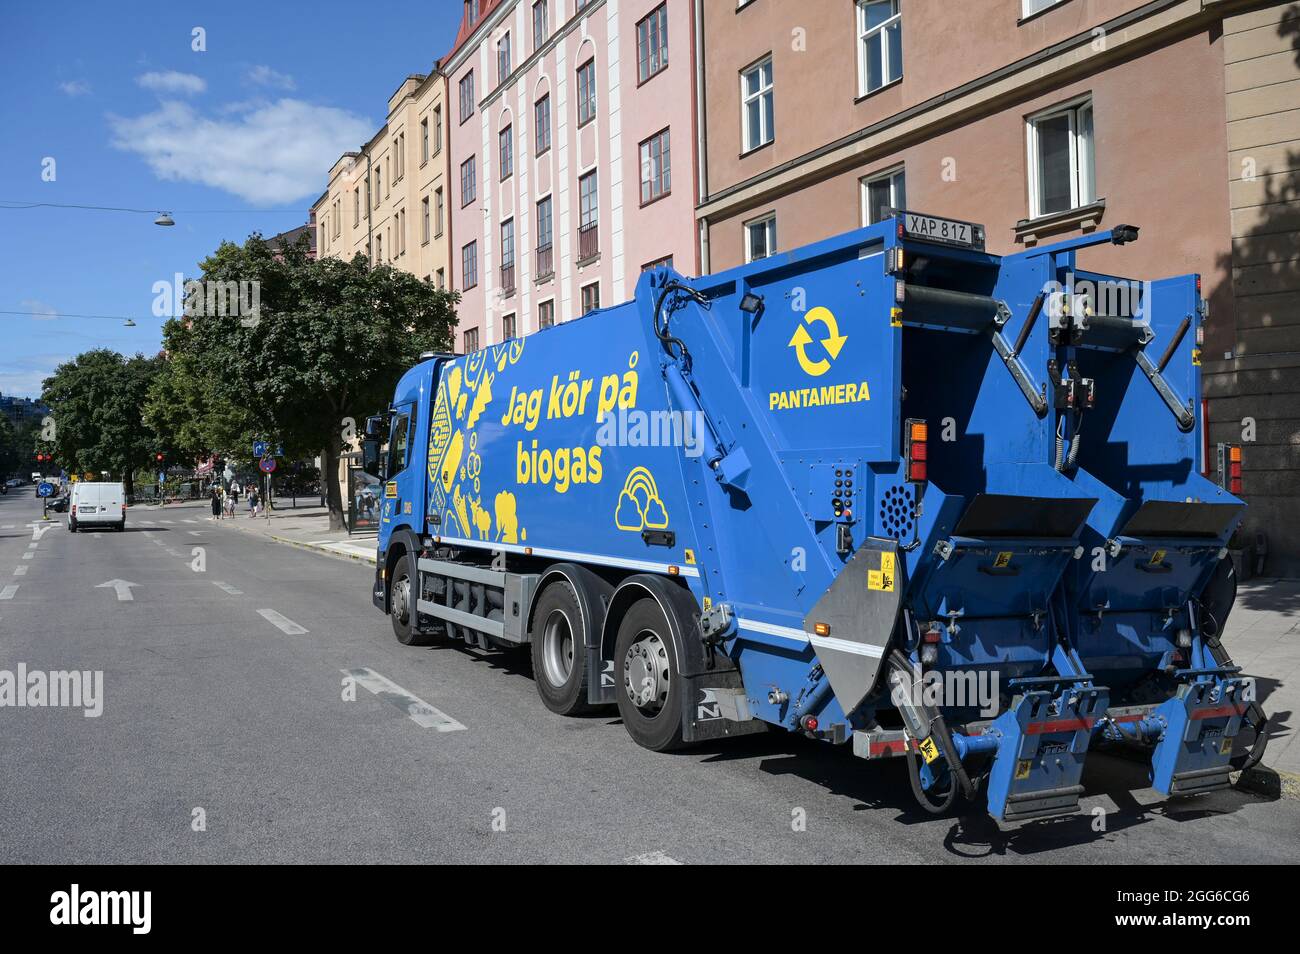 SUECIA, Estocolmo, camión de gestión de residuos urbanos impulsado por Biogas fuel / SCHWEDEN, Estocolmo, LKW der Müllabfuhr mit Biogas Antrieb Foto de stock